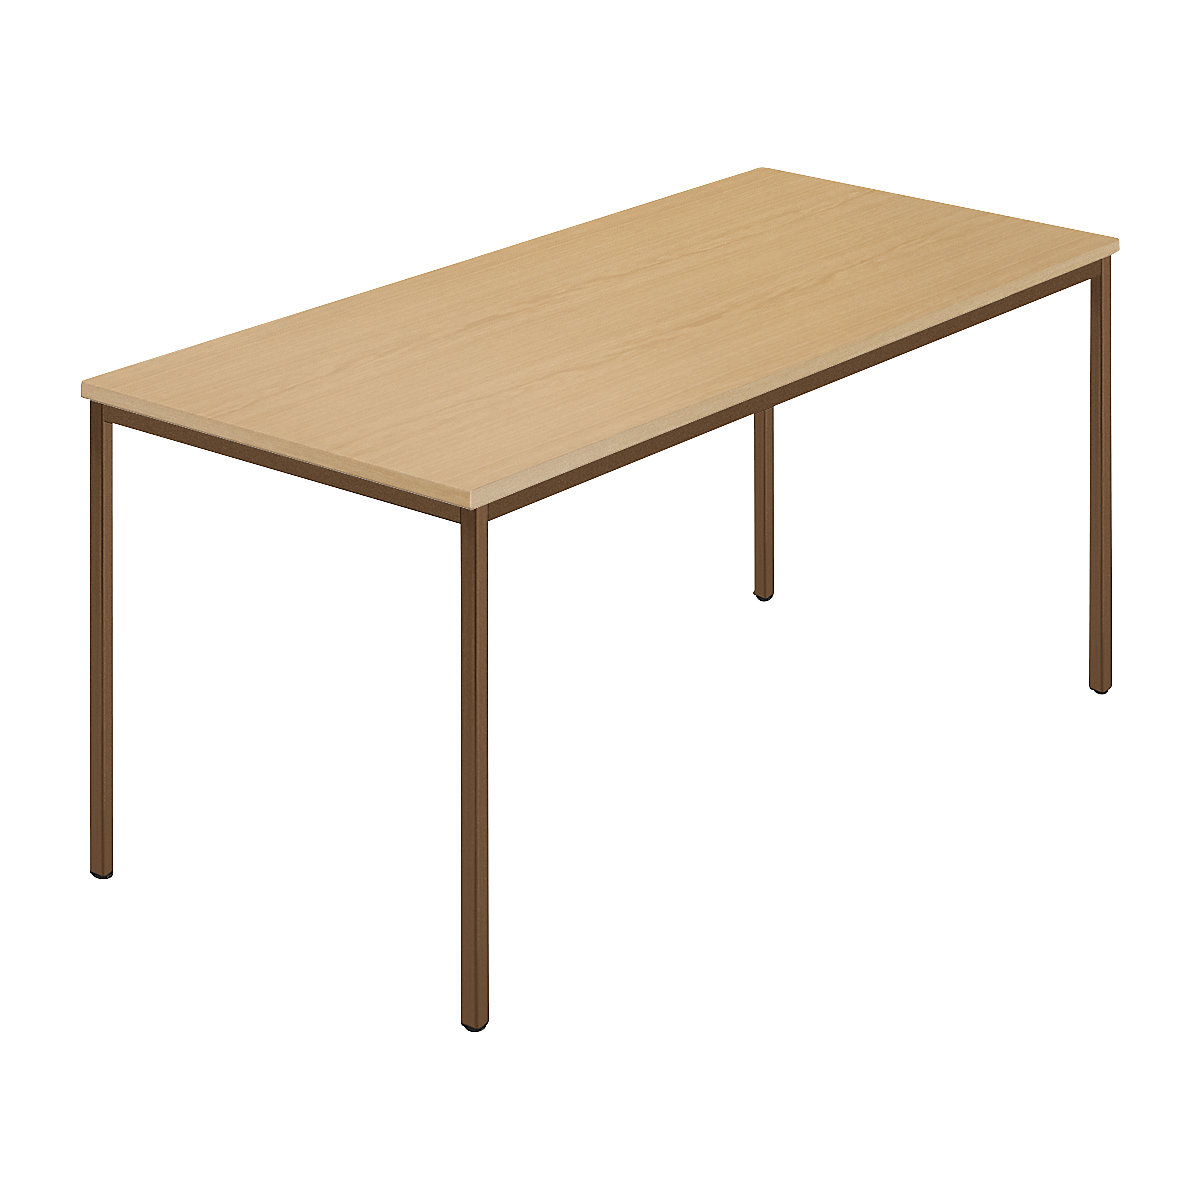 Rechthoekige tafel, vierkante buis met coating, b x d = 1500 x 800 mm, naturel beukenhout / bruin-8